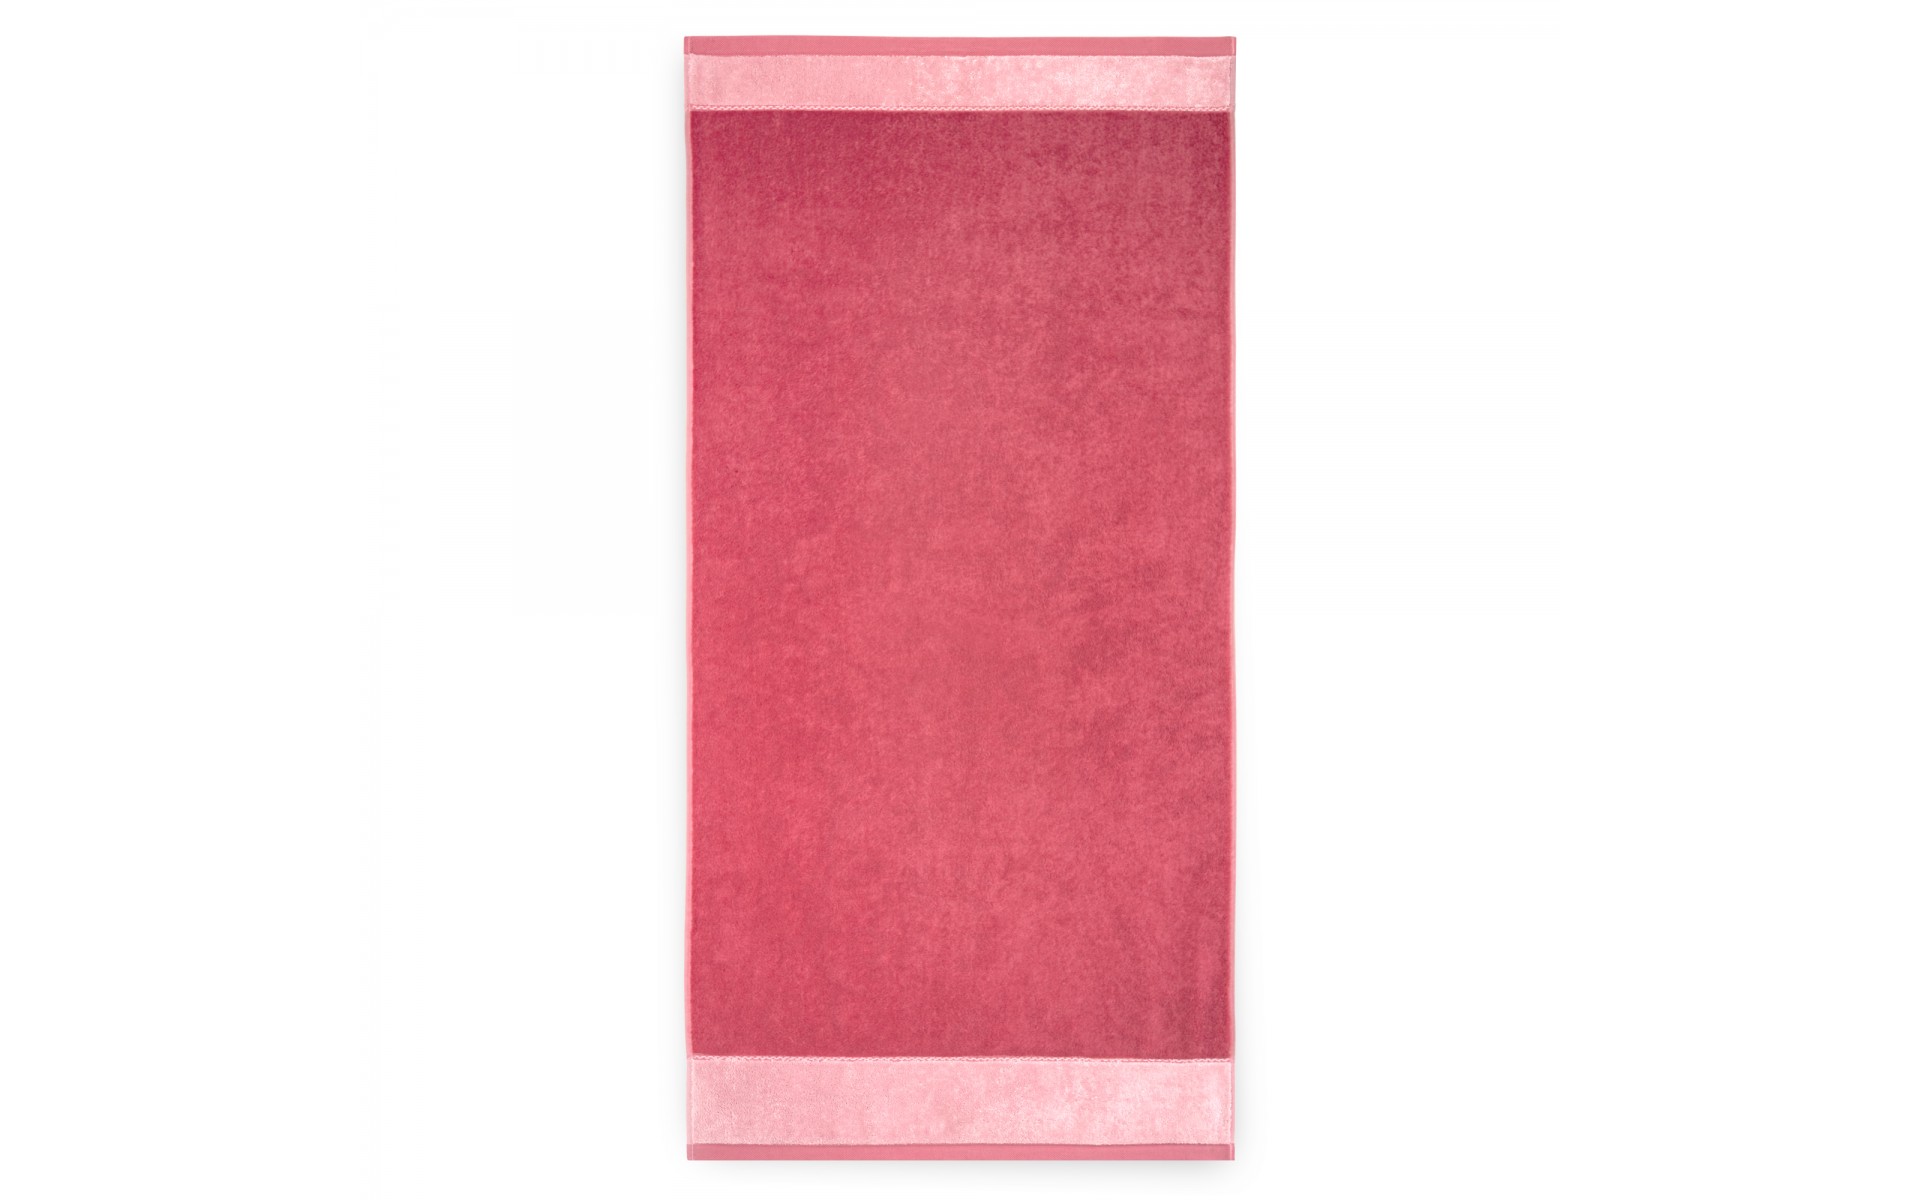 ręcznik MEGAN karnelian-różowy - 6715